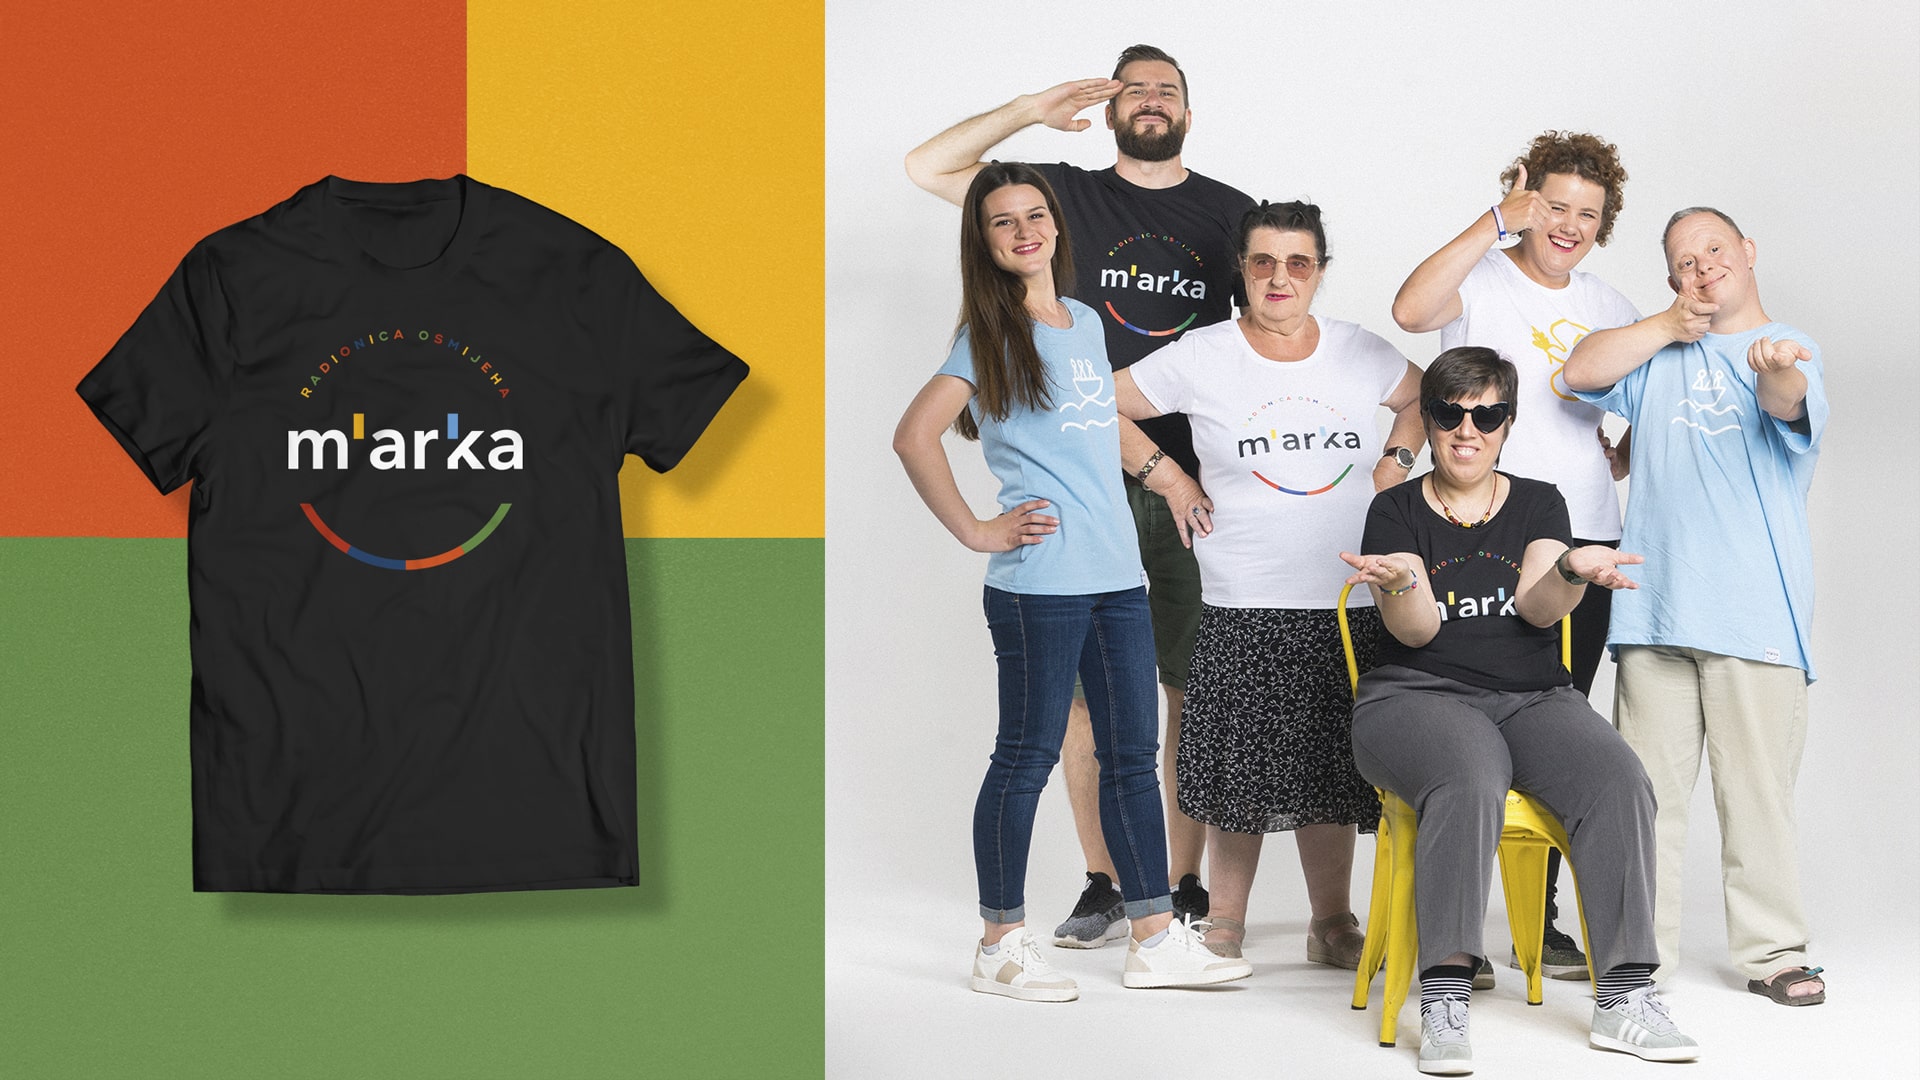 M’arka Branding for L’arche Croatia Arka by Emtisquare